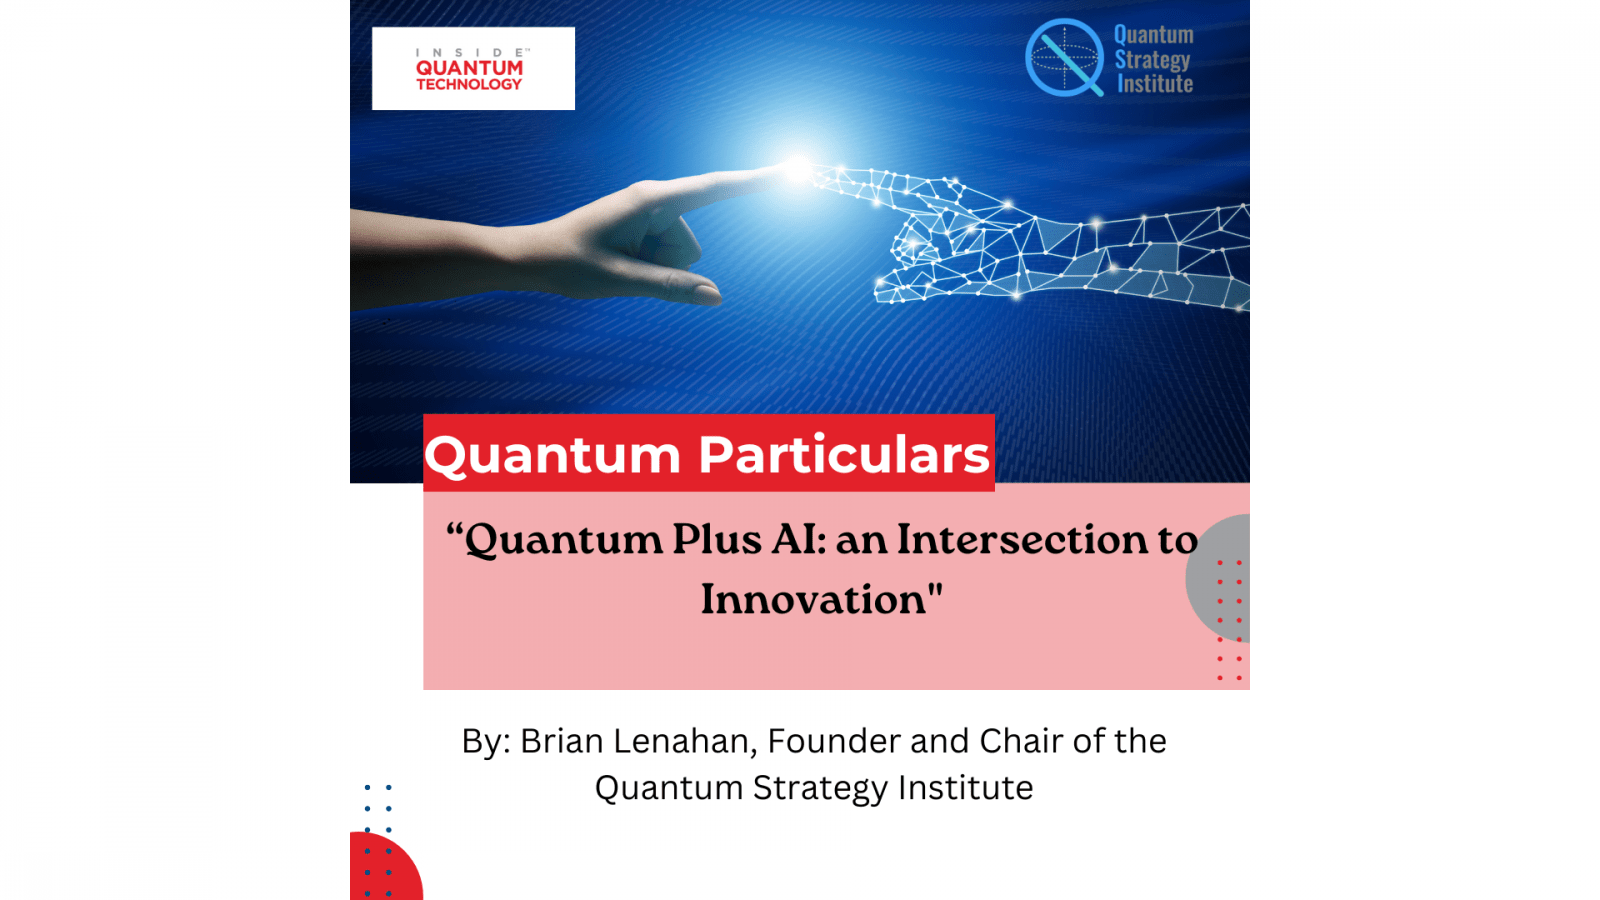 Σε ένα νέο προσκεκλημένο άρθρο, ο ιδρυτής και πρόεδρος του Quantum Strategy Institute Brian Lenahan συζητά τη διασταύρωση μεταξύ AI και κβαντικού υπολογισμού.